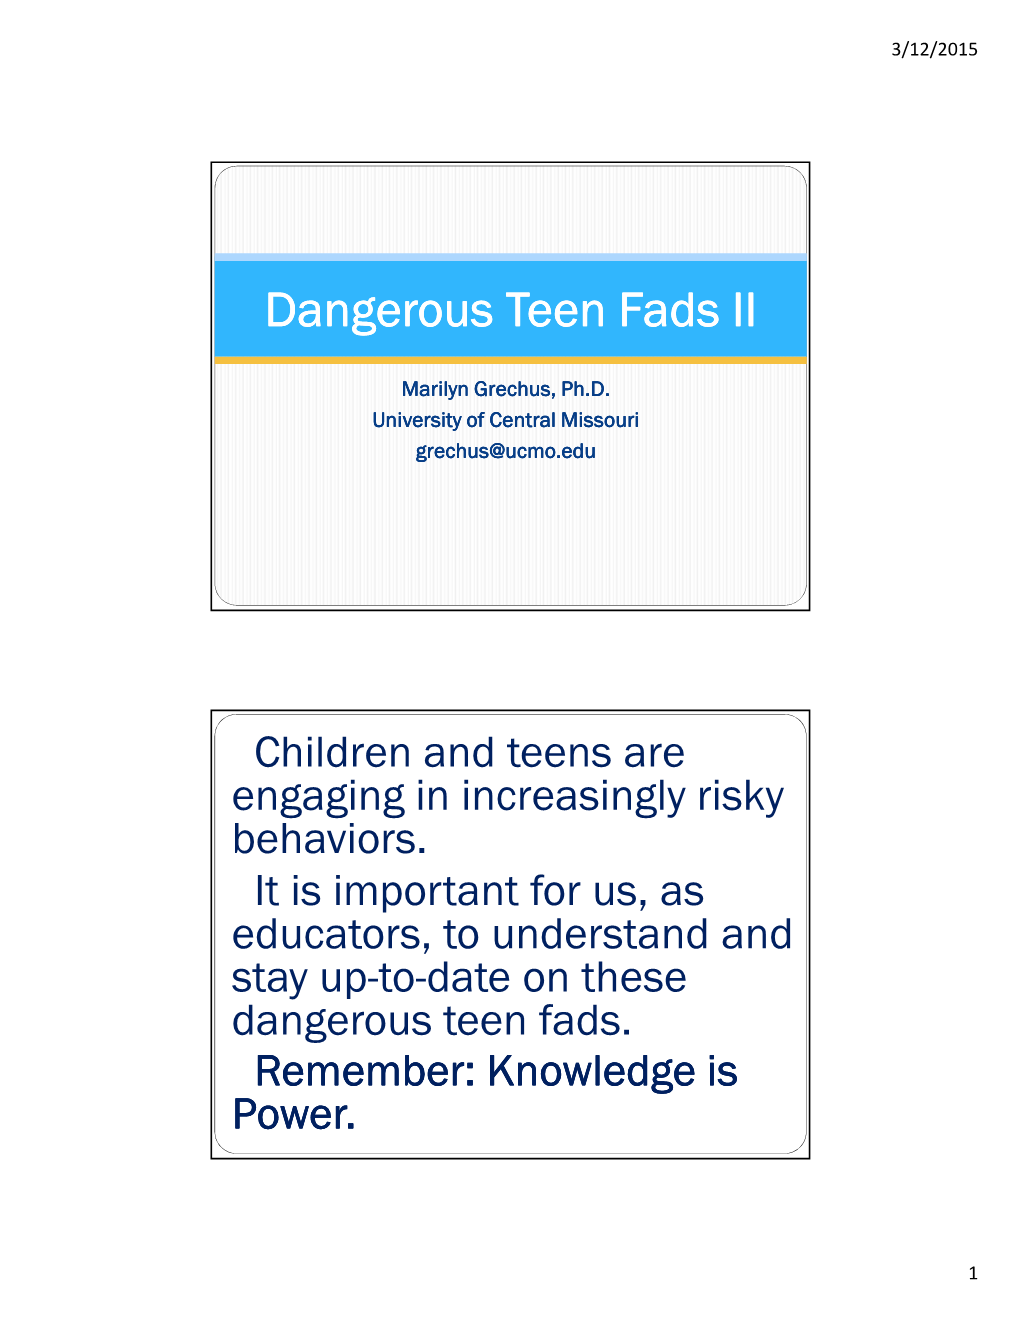 Dangerous Teen Fads II